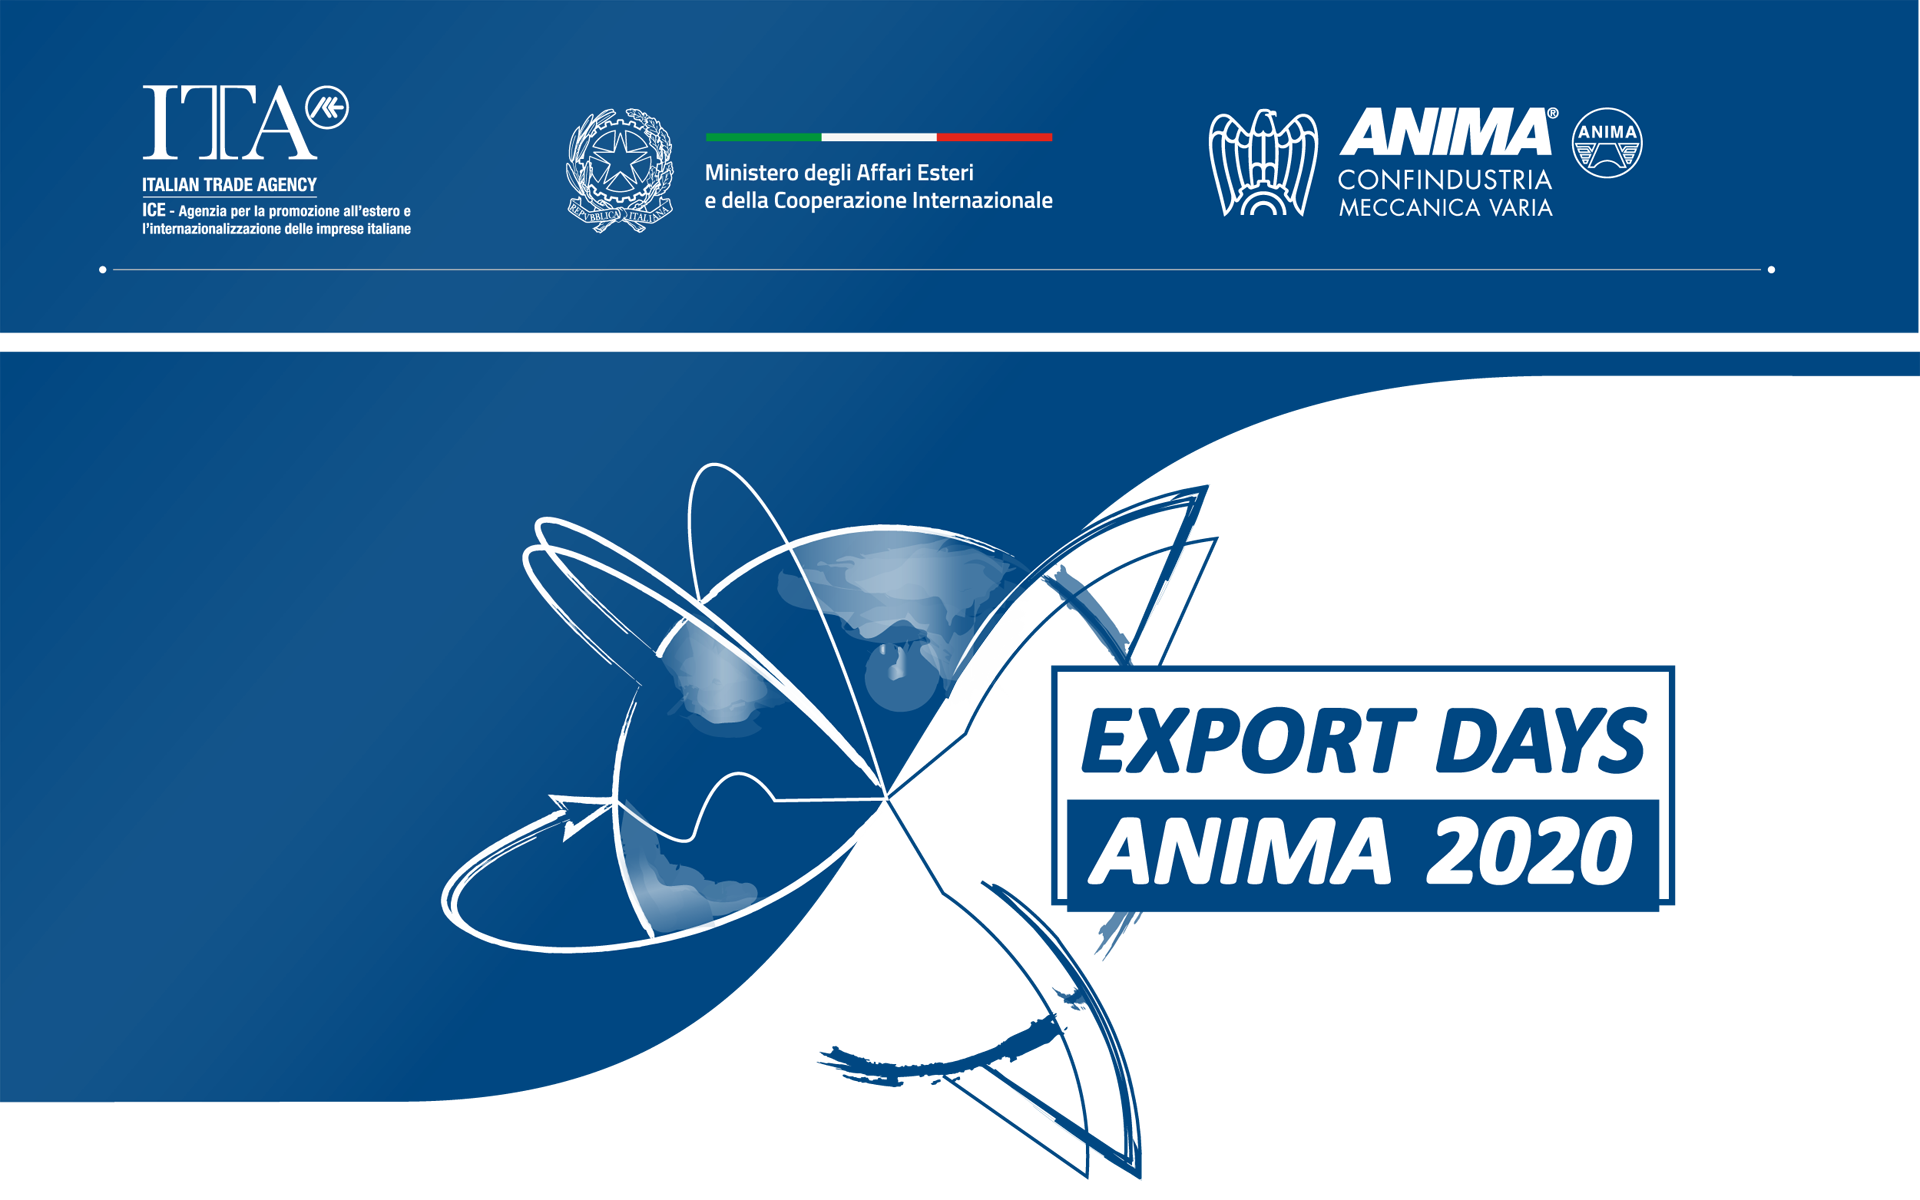 Export Days ANIMA 2020